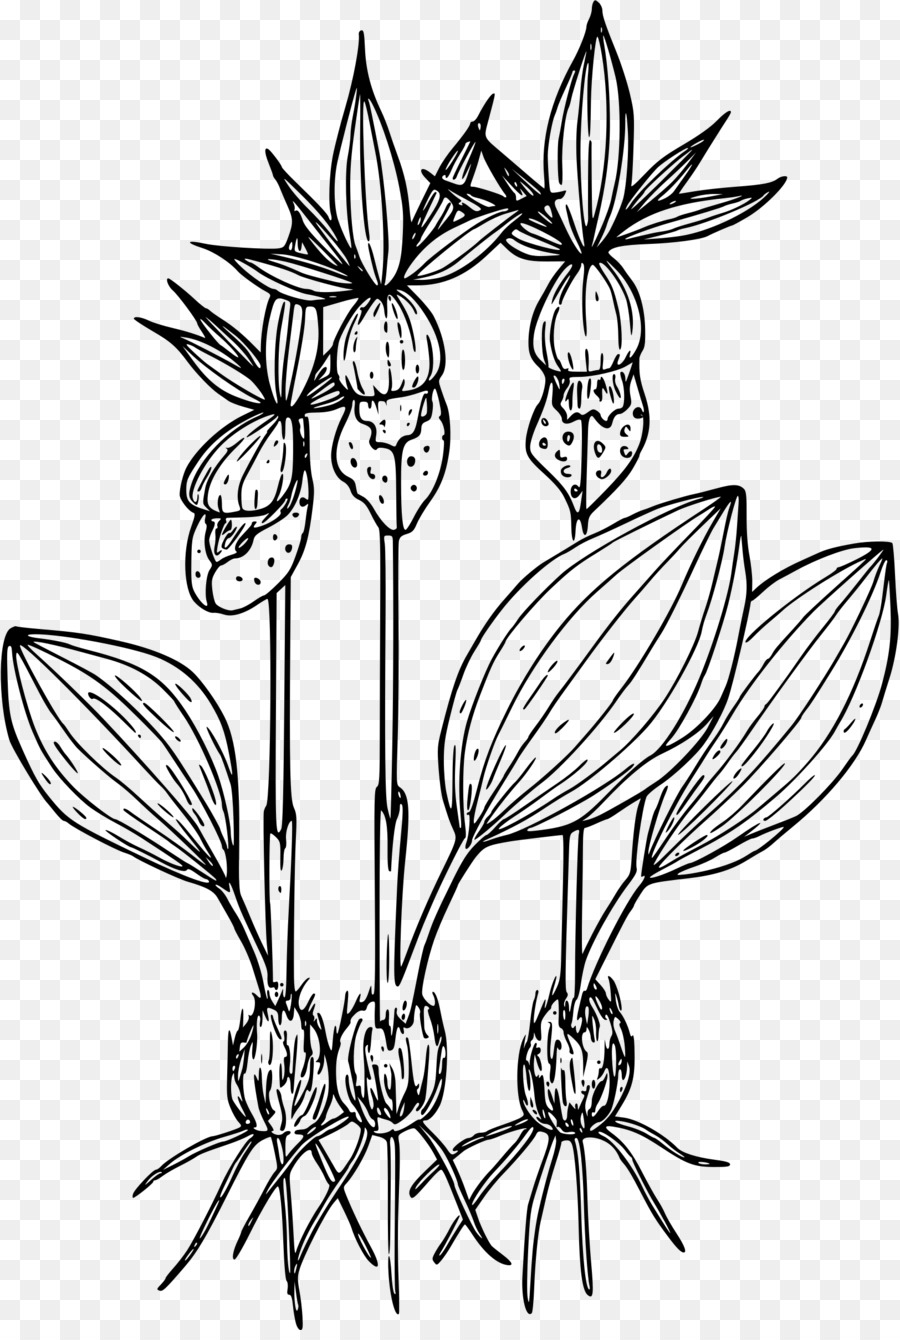 Vẽ Hoa Calypso - hoa